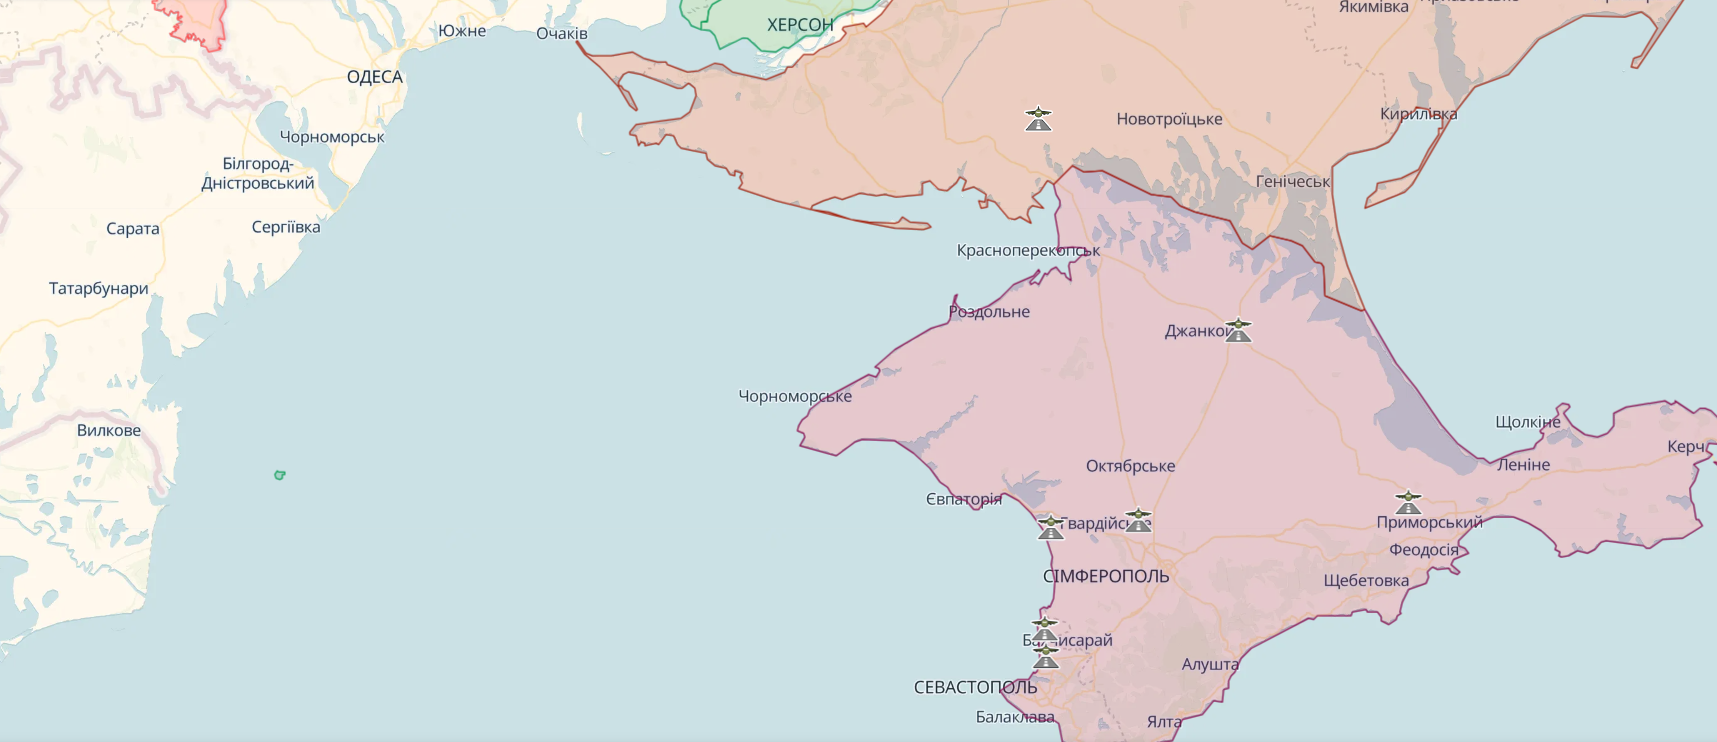 Украина попыталась атаковать морские платформы "Черноморнефтегаза": в британской разведке назвали причину